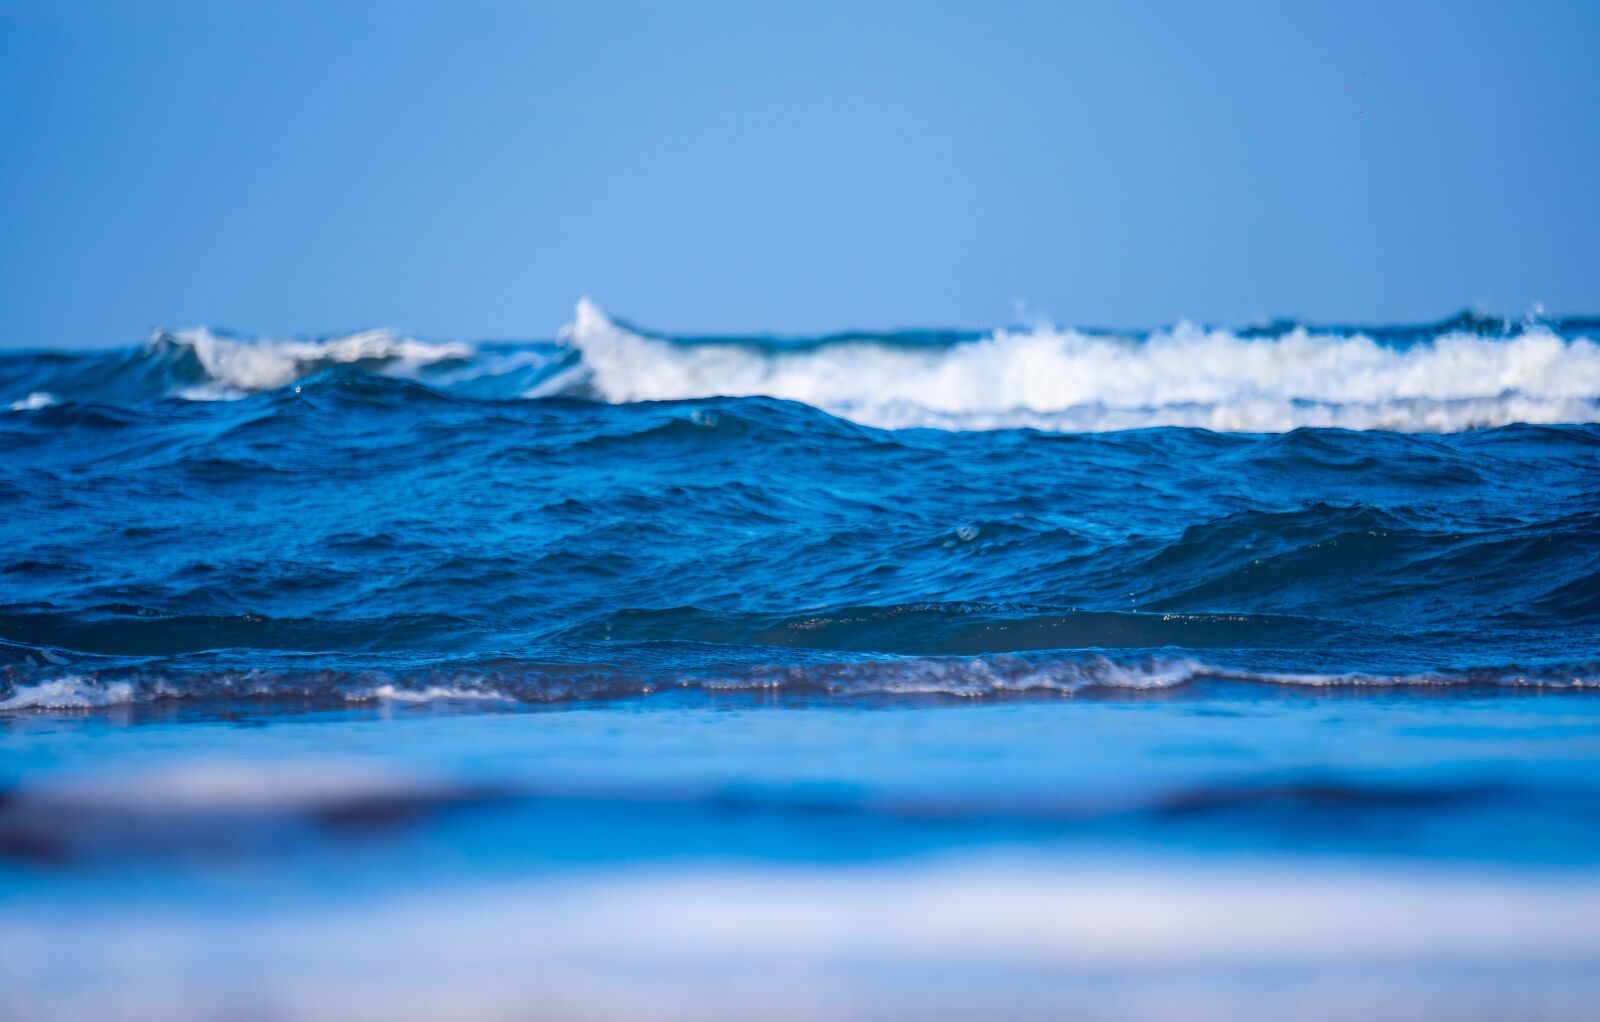 Sony E 55-210mm F4.5-6.3 OSS sample photo. Beach, waves, ocean photography